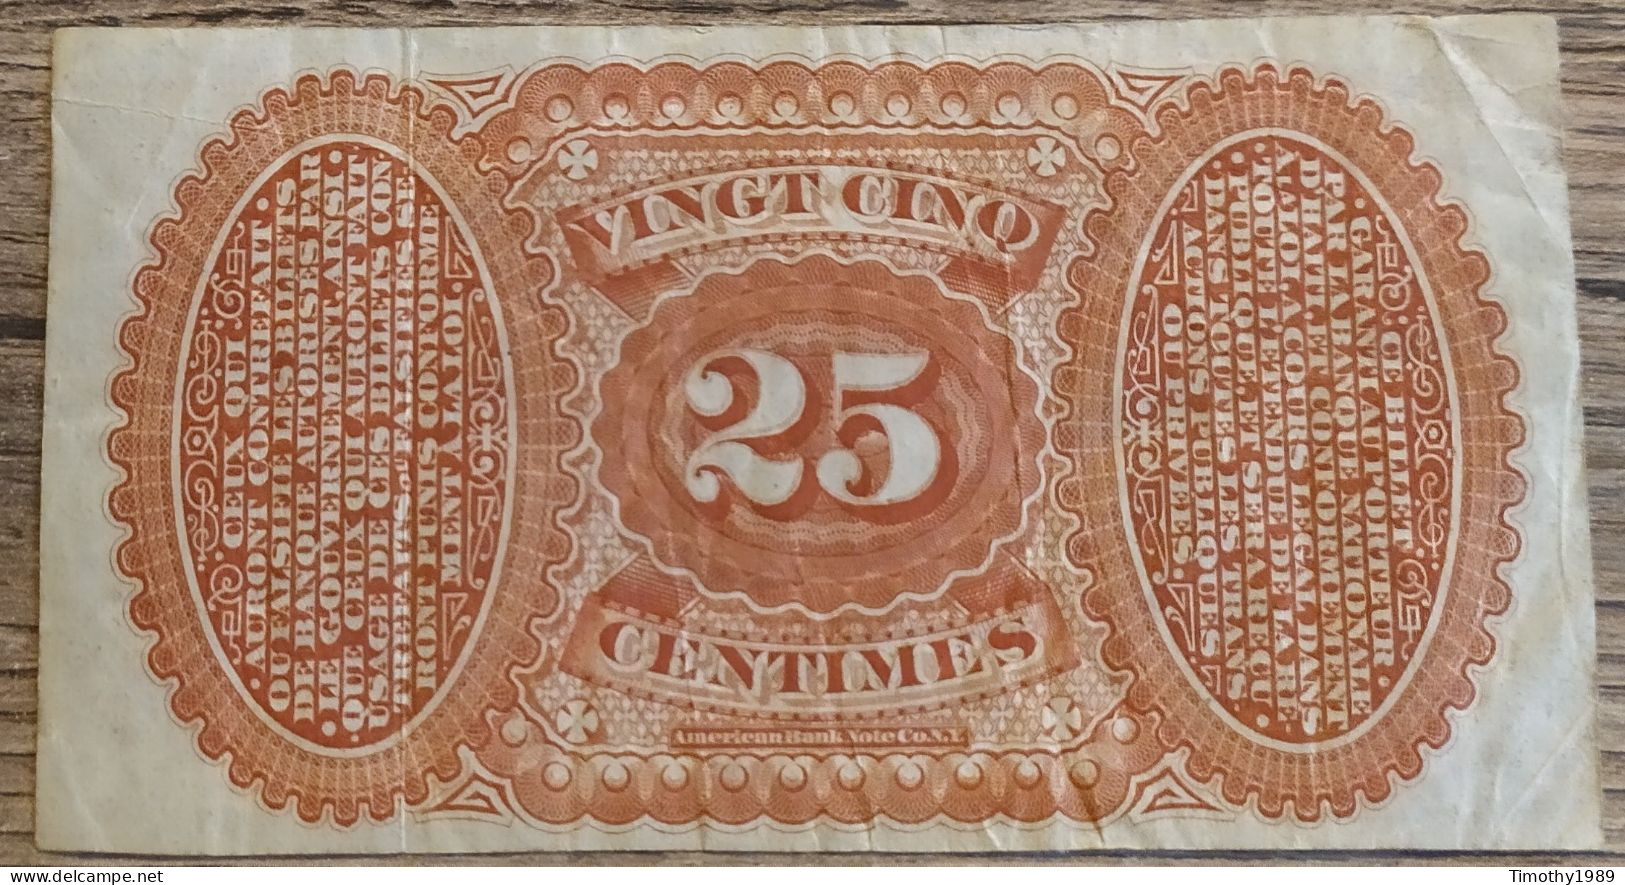 P# 68 - 25 Centimes Haiti 1875 - VF+ (Extremely Rare!!) - Haiti